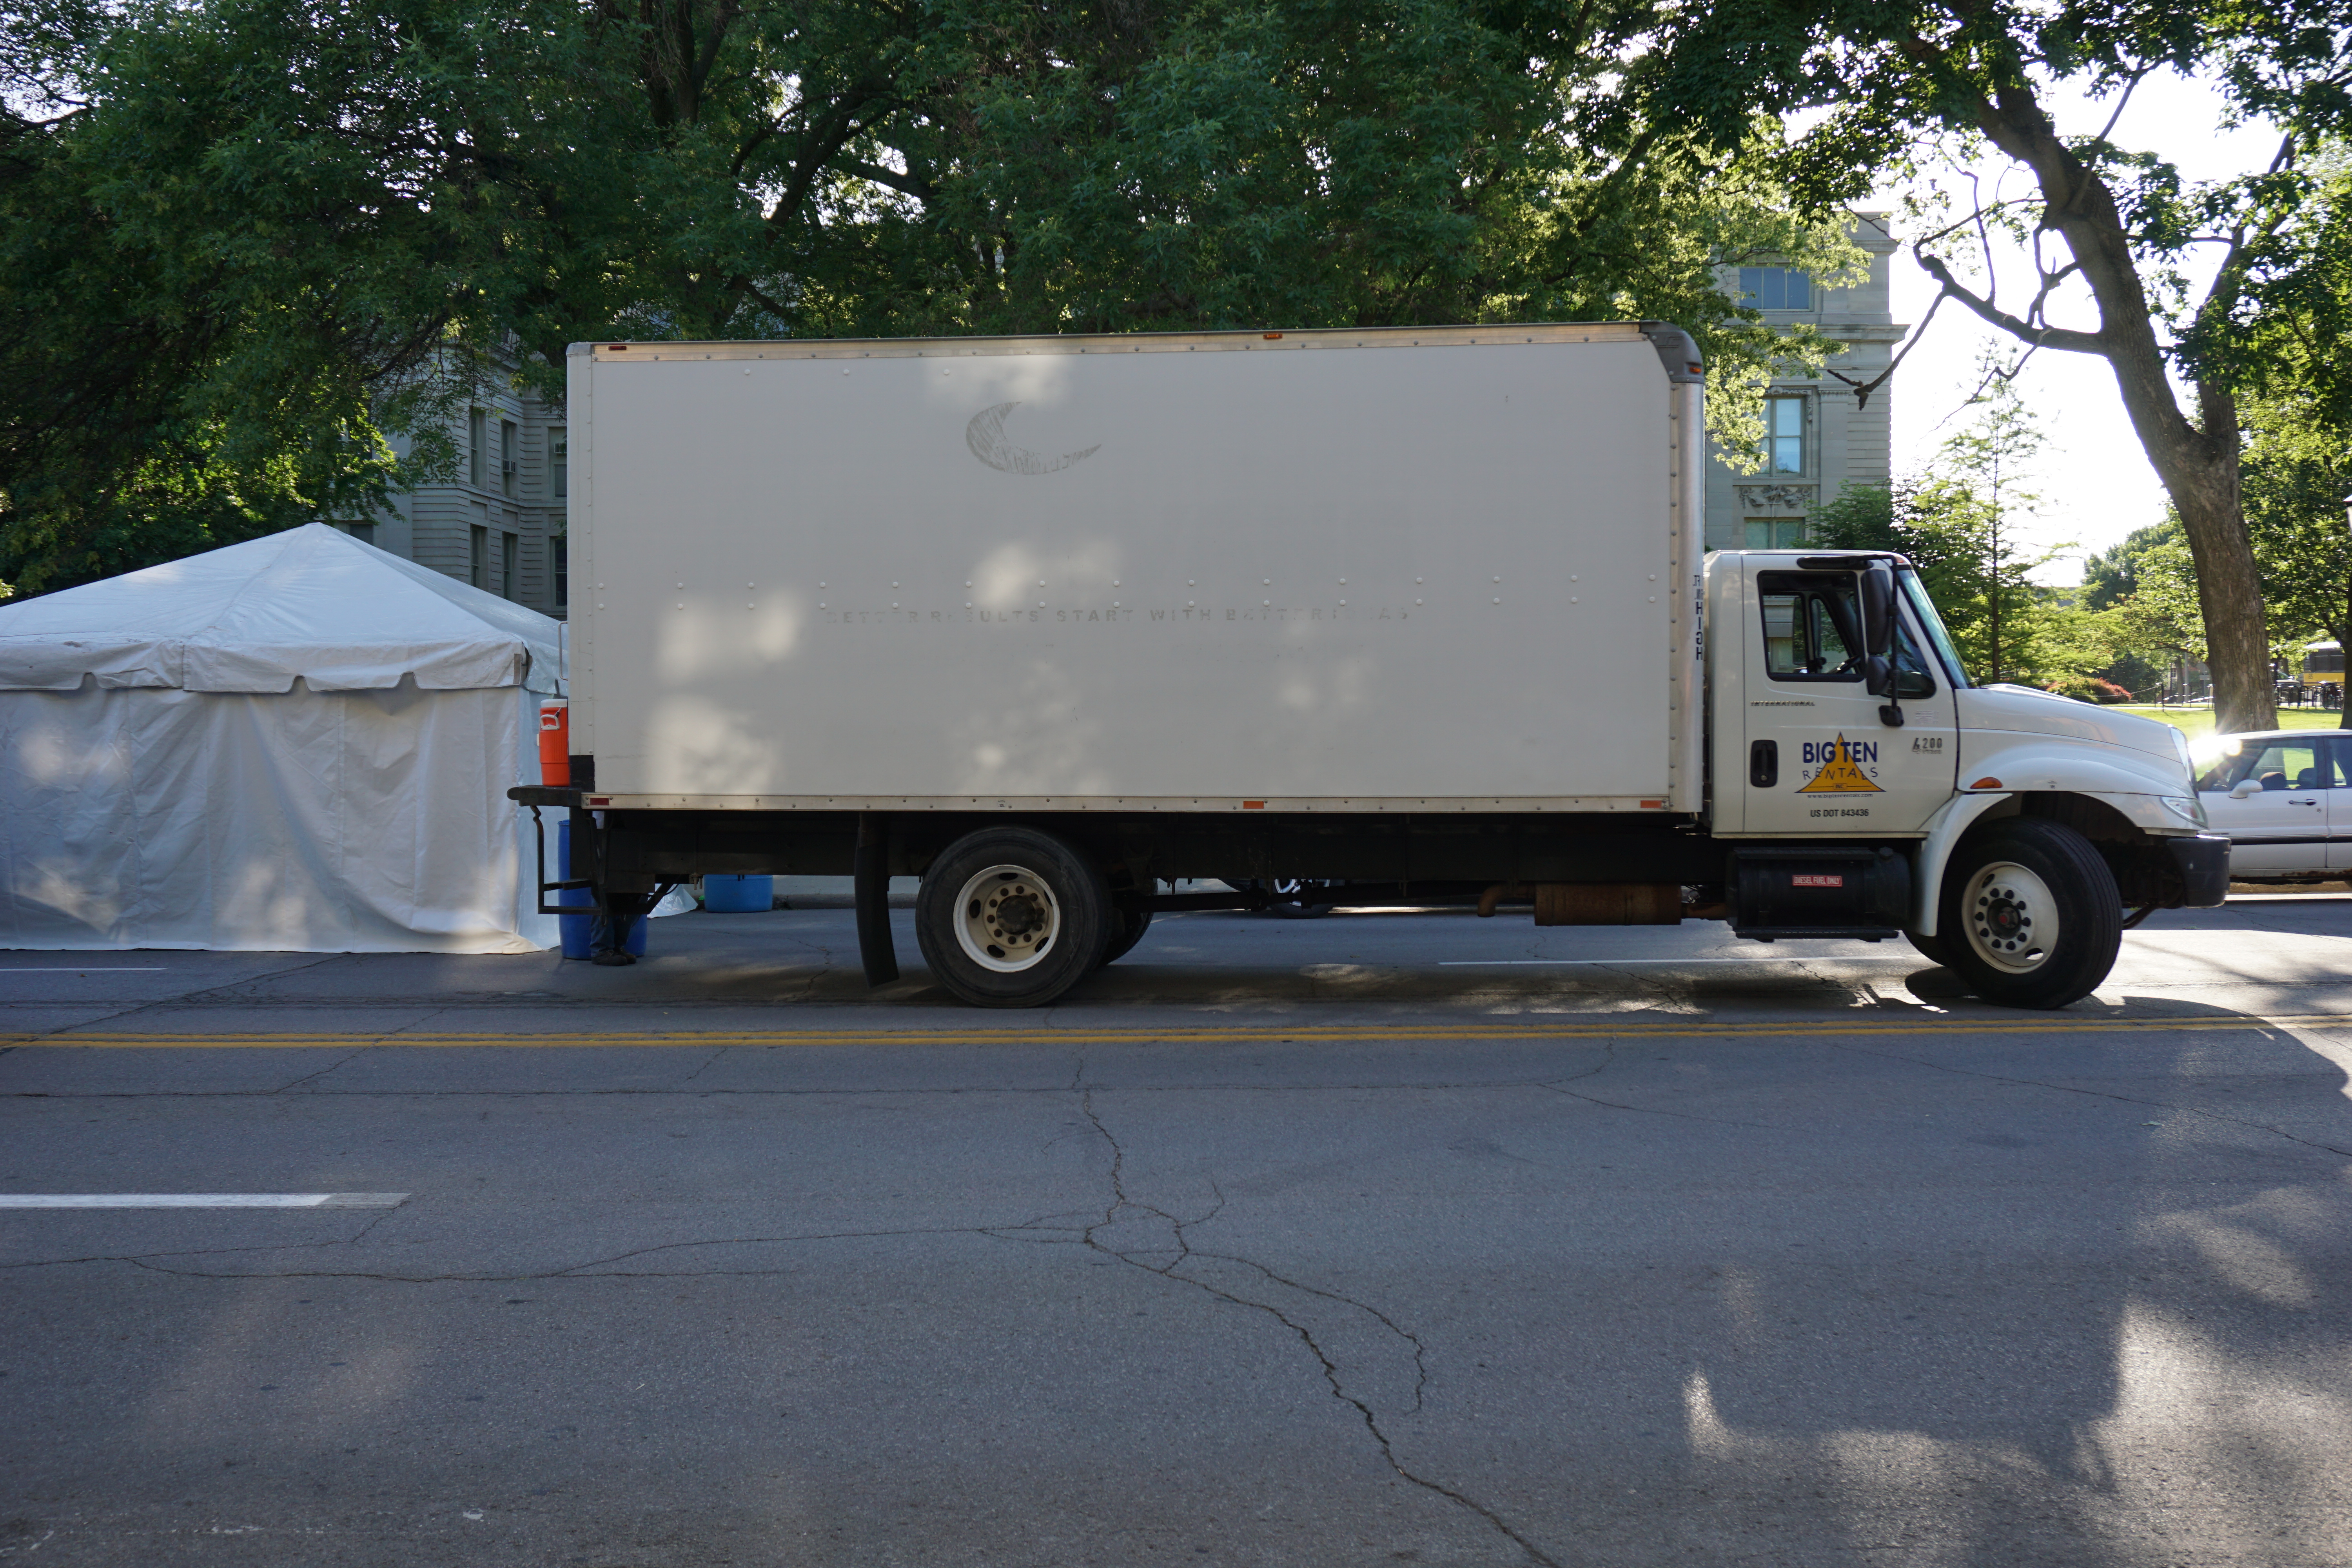 Big Ten Rentals truck with tent at 2016 Iowa Arts Fest